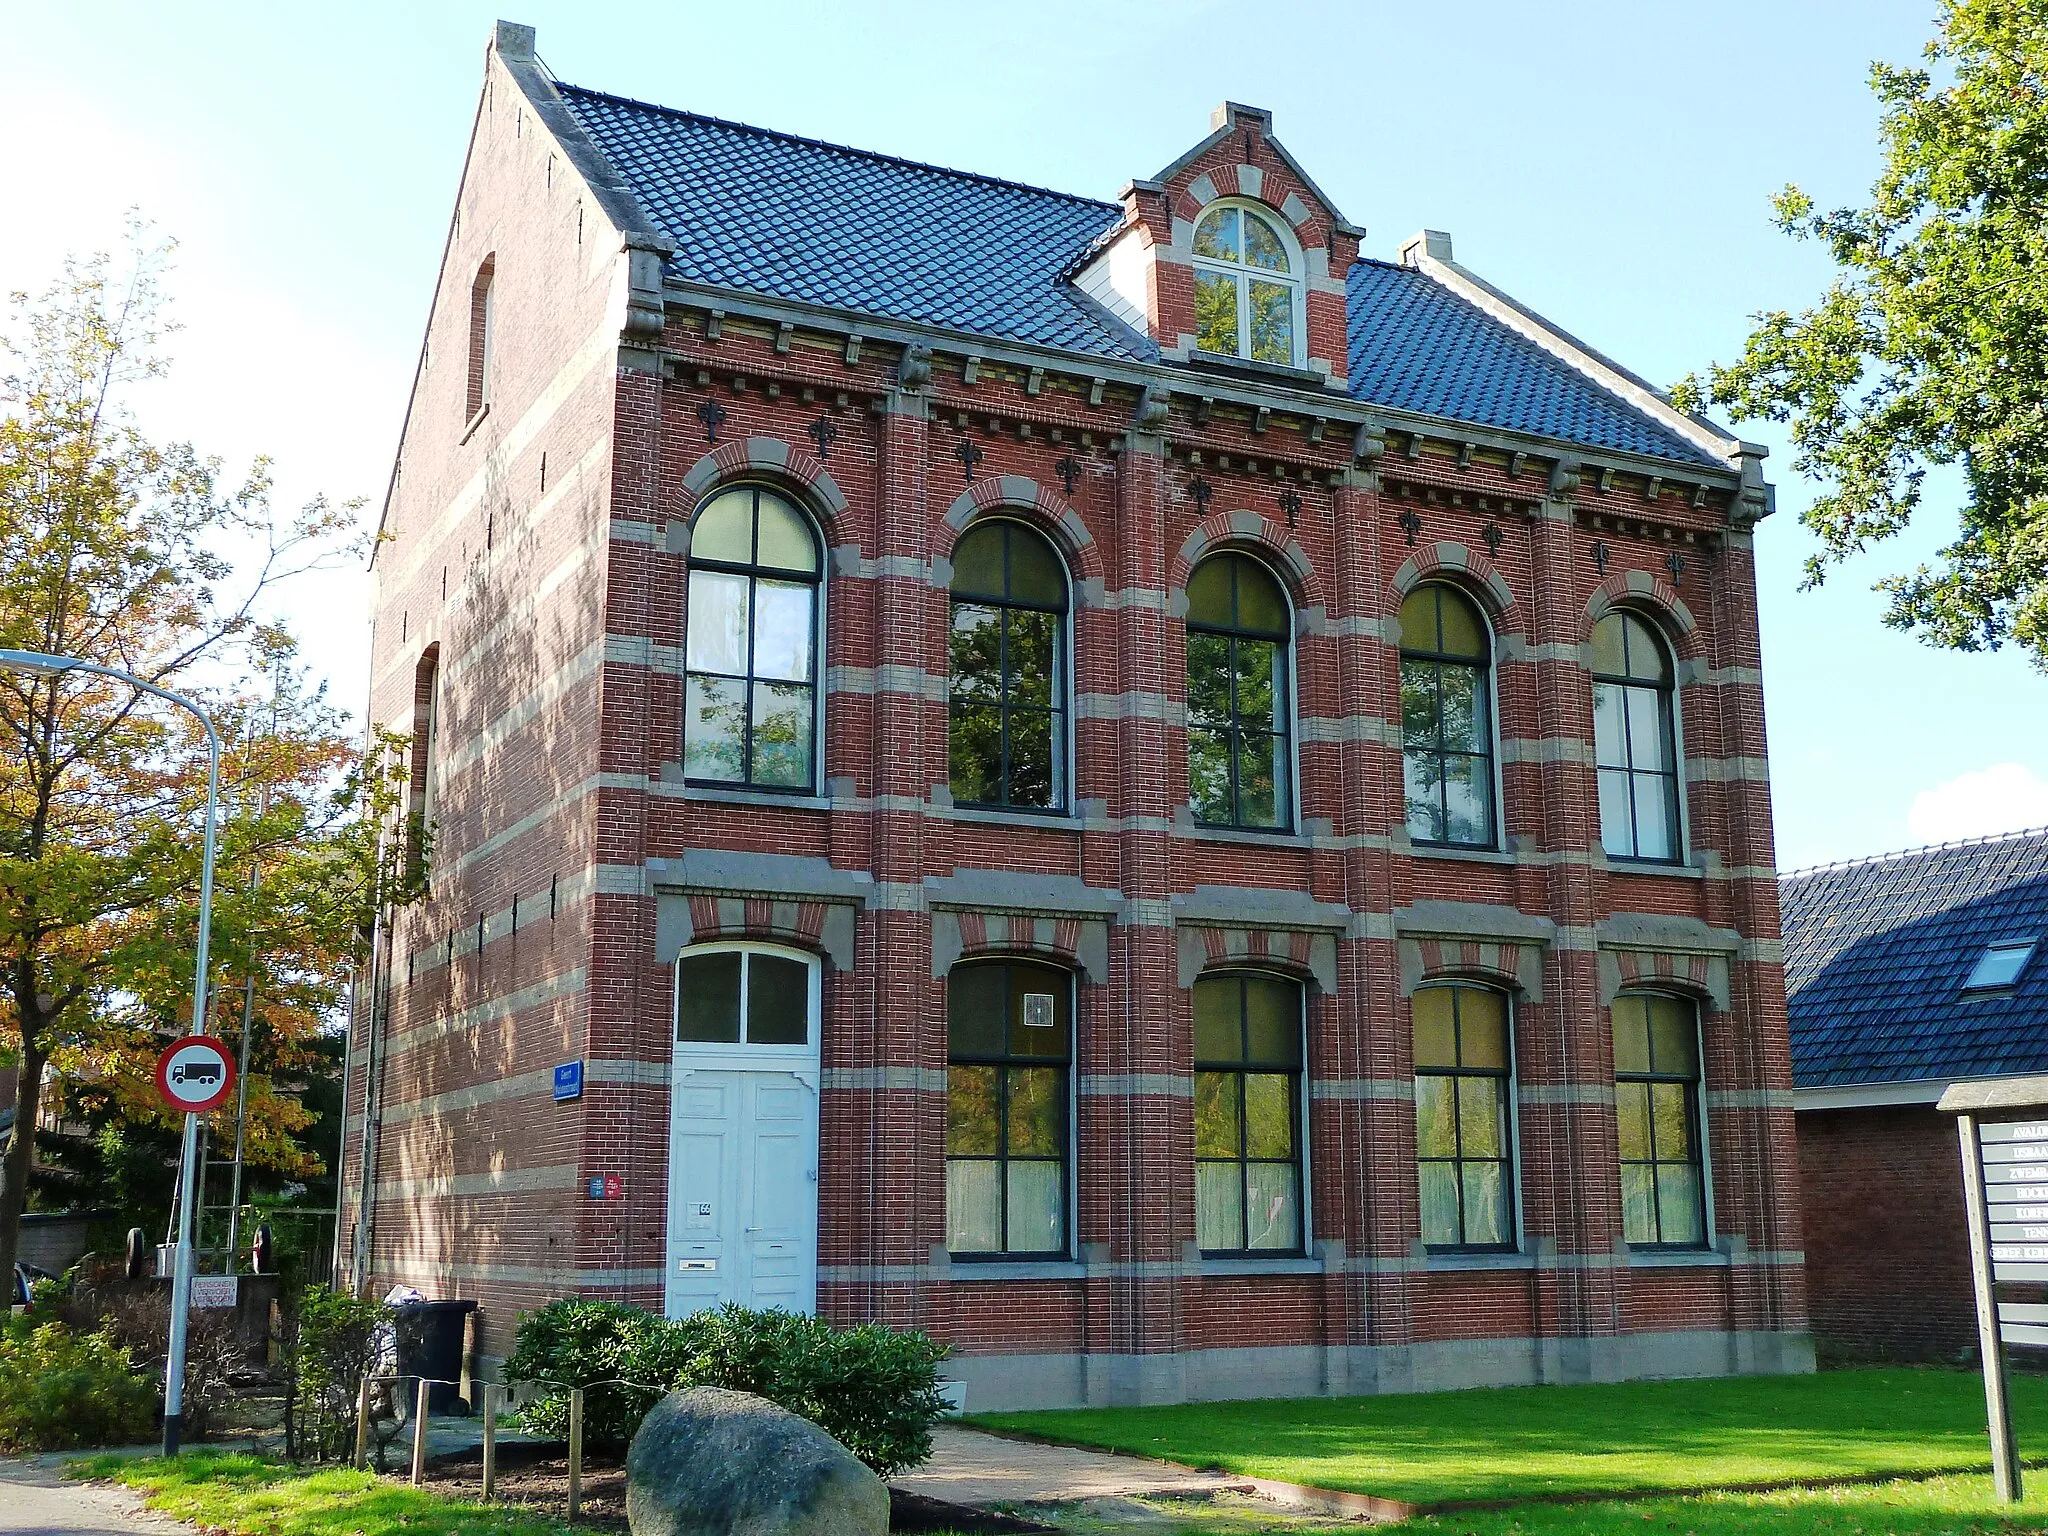 Photo showing: Voormalige kantongerecht van Zuidhorn. Gebouwd in 1883 in eclectische stijl met neo-gotische elementen naar een ontwerp van rijksbouwmeester Johan Metzelaar. In 1933 beëindigde het kantongerecht haar werkzaamheden. Later was er tot 2008 de muziekschool Westerkwartier gevestigd.